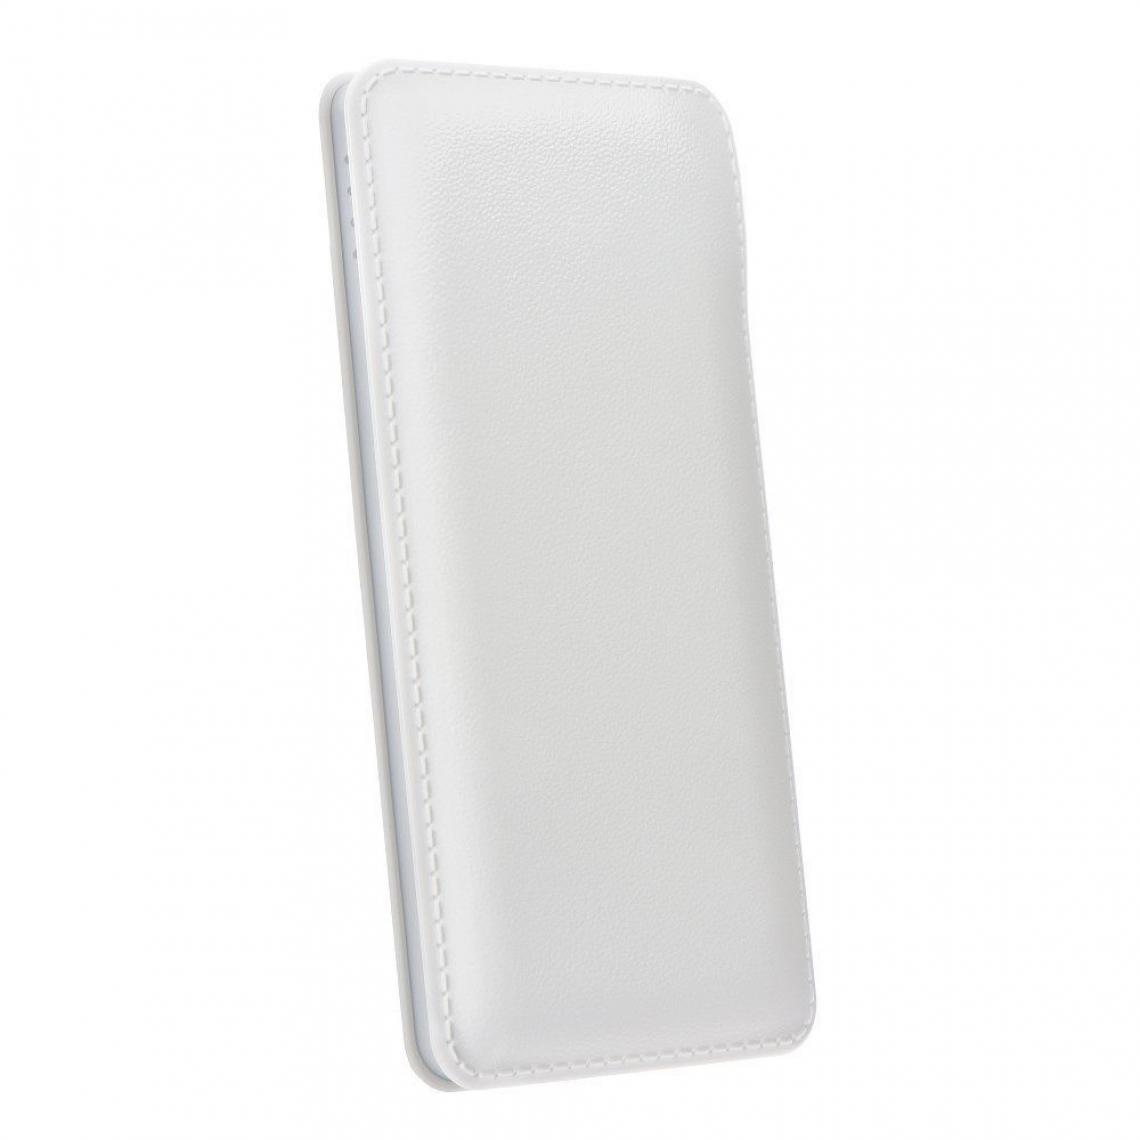 Ozzzo - Chargeur batterie externe 20000 mAh powerbank ozzzo blanc pour LG Stylo 5 - Autres accessoires smartphone